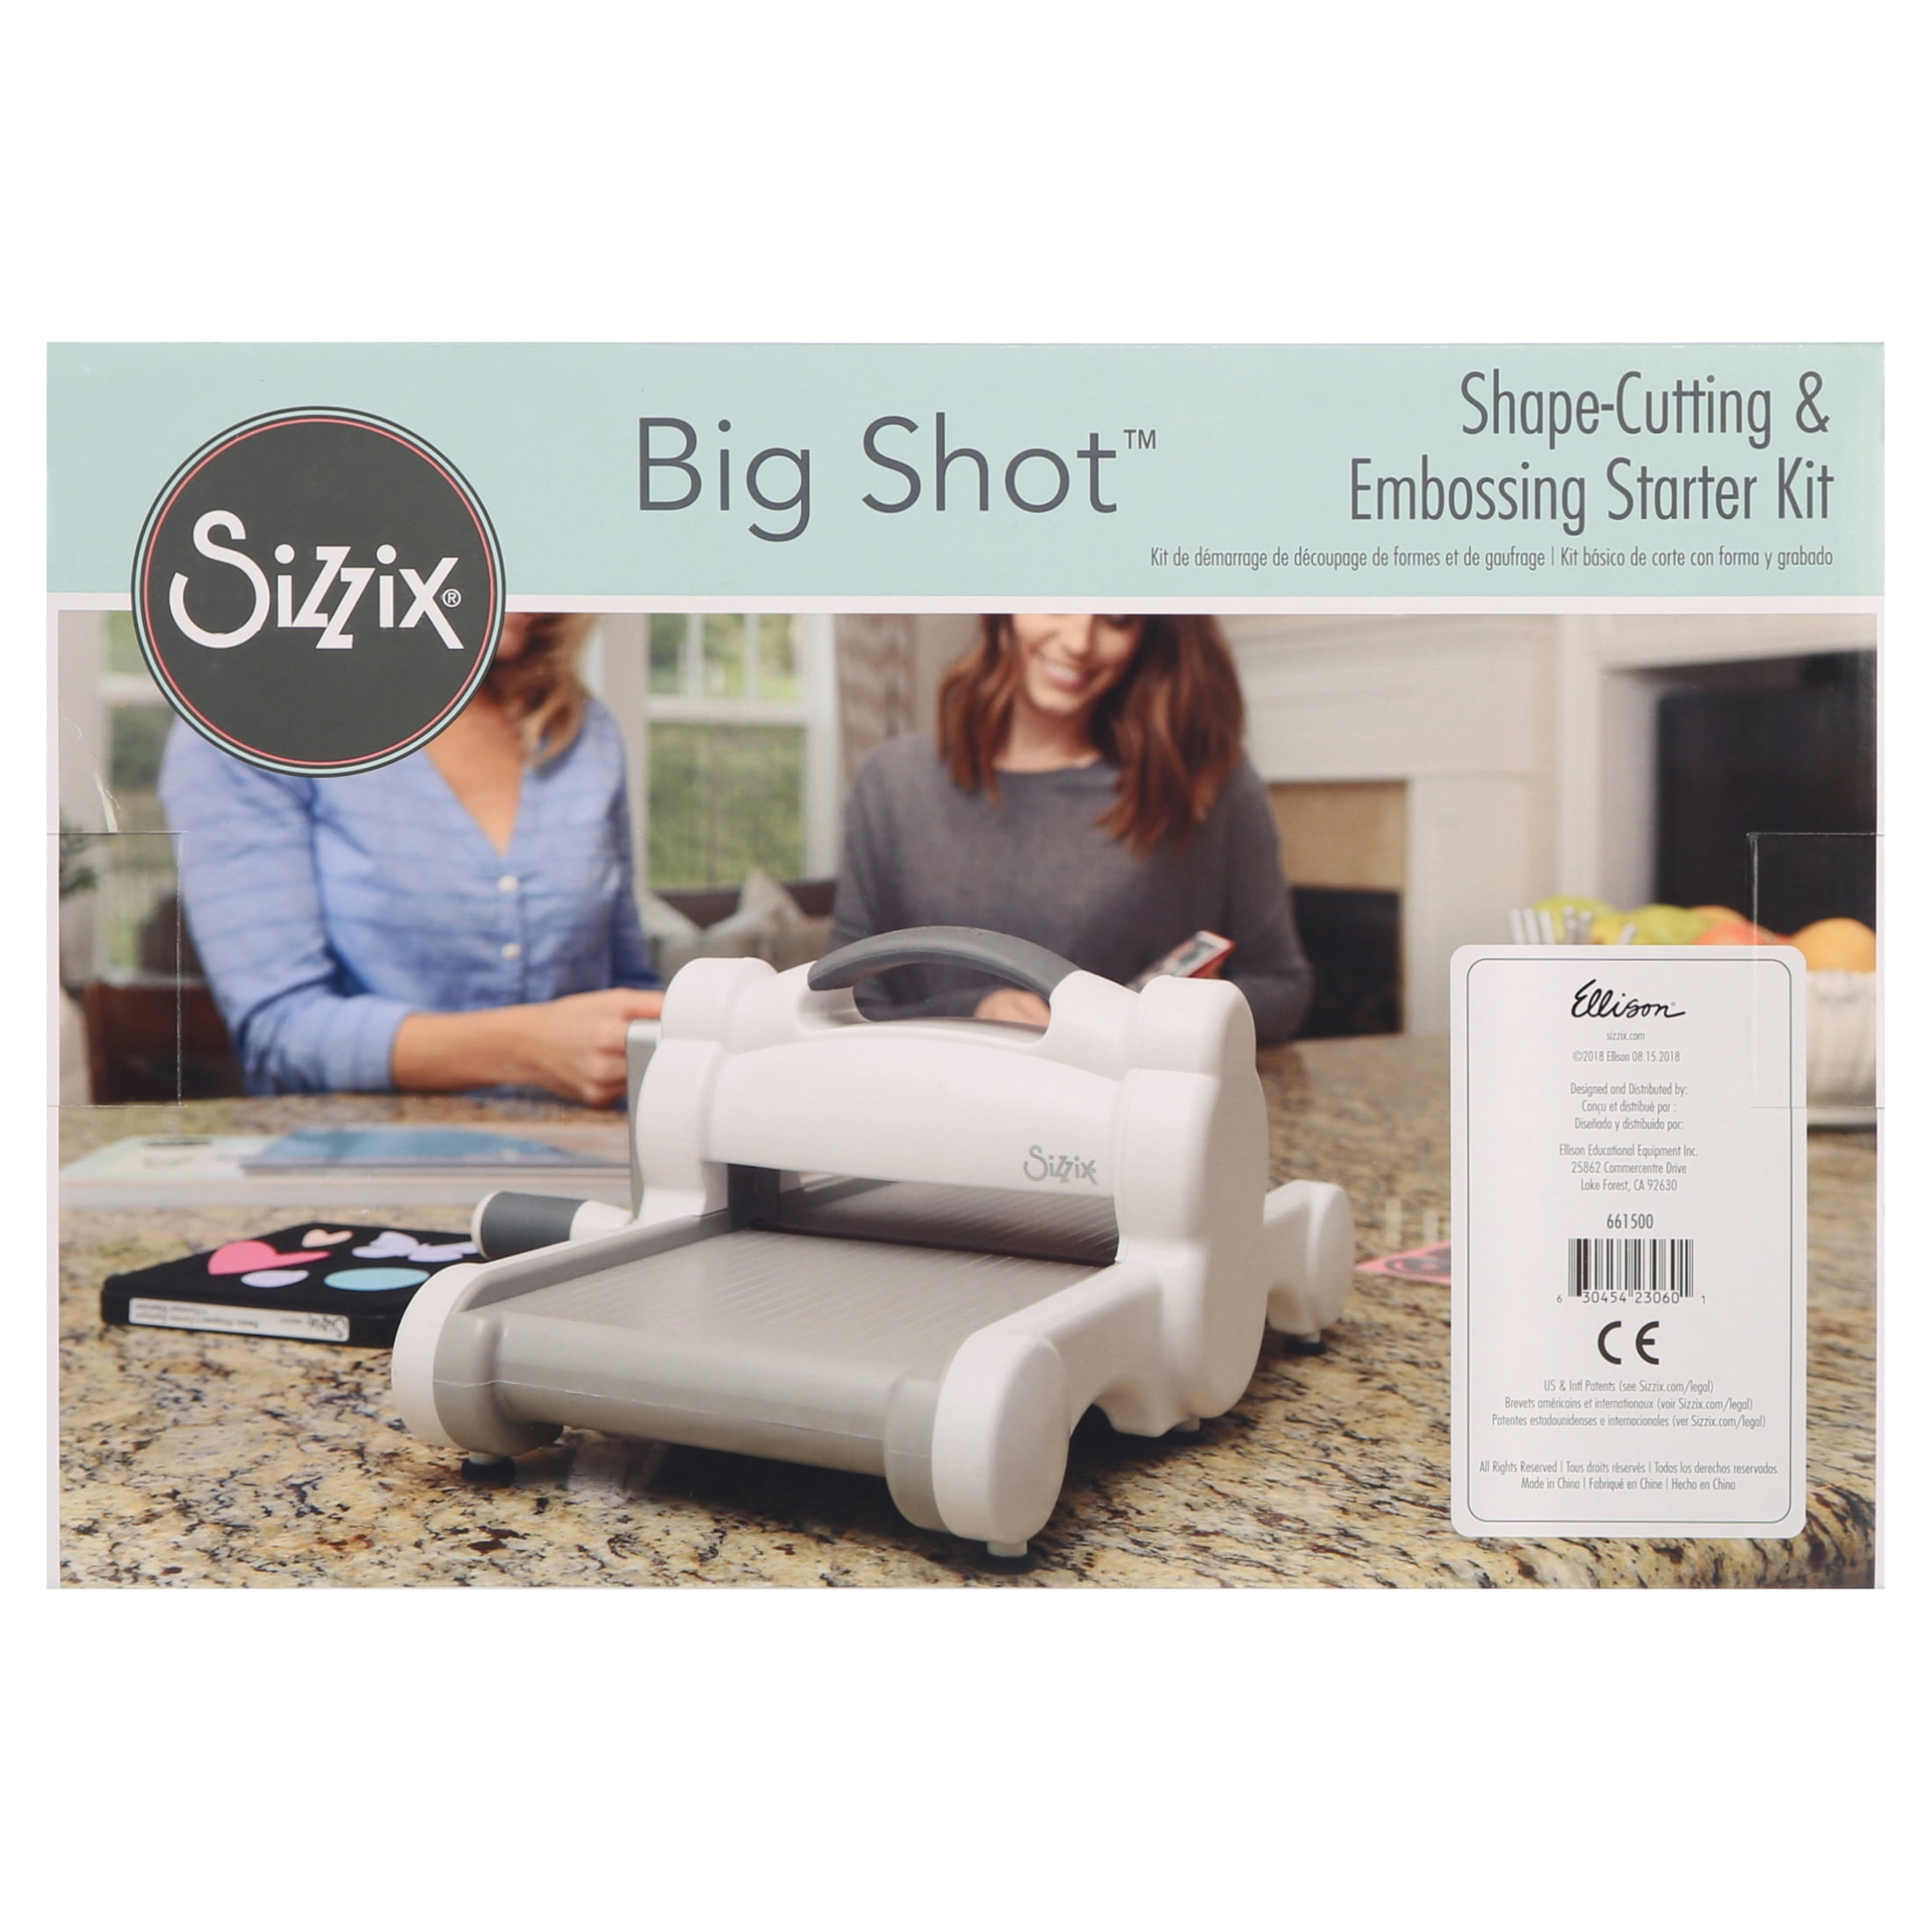  Sizzix Big Shot Plus Starter Kit 660341 Manual Die Cutting &  Embossing Machine for Arts & Crafts, Scrapbooking & Cardmaking, 9” Opening